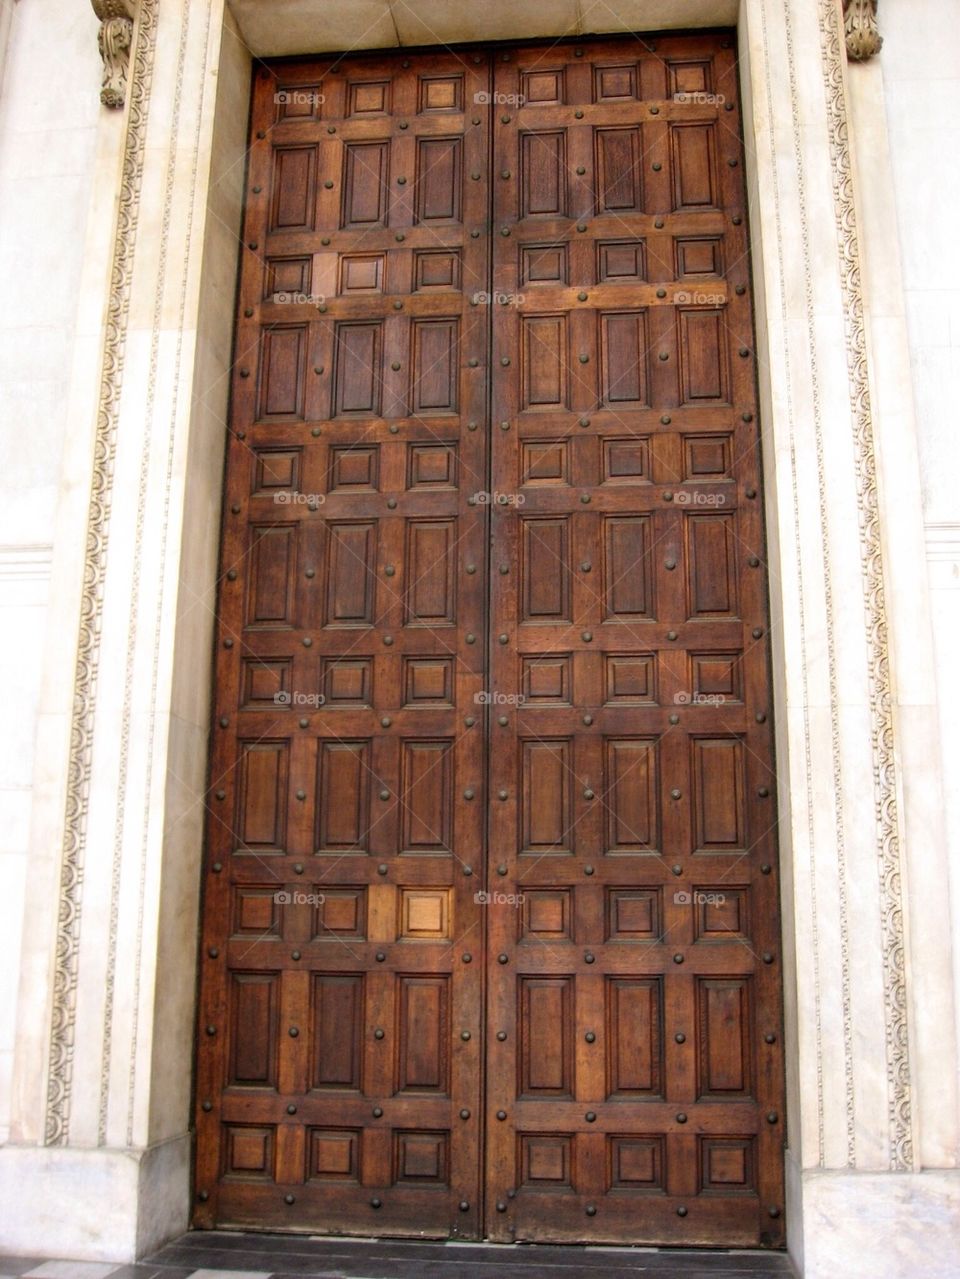 Doors to St Pauls